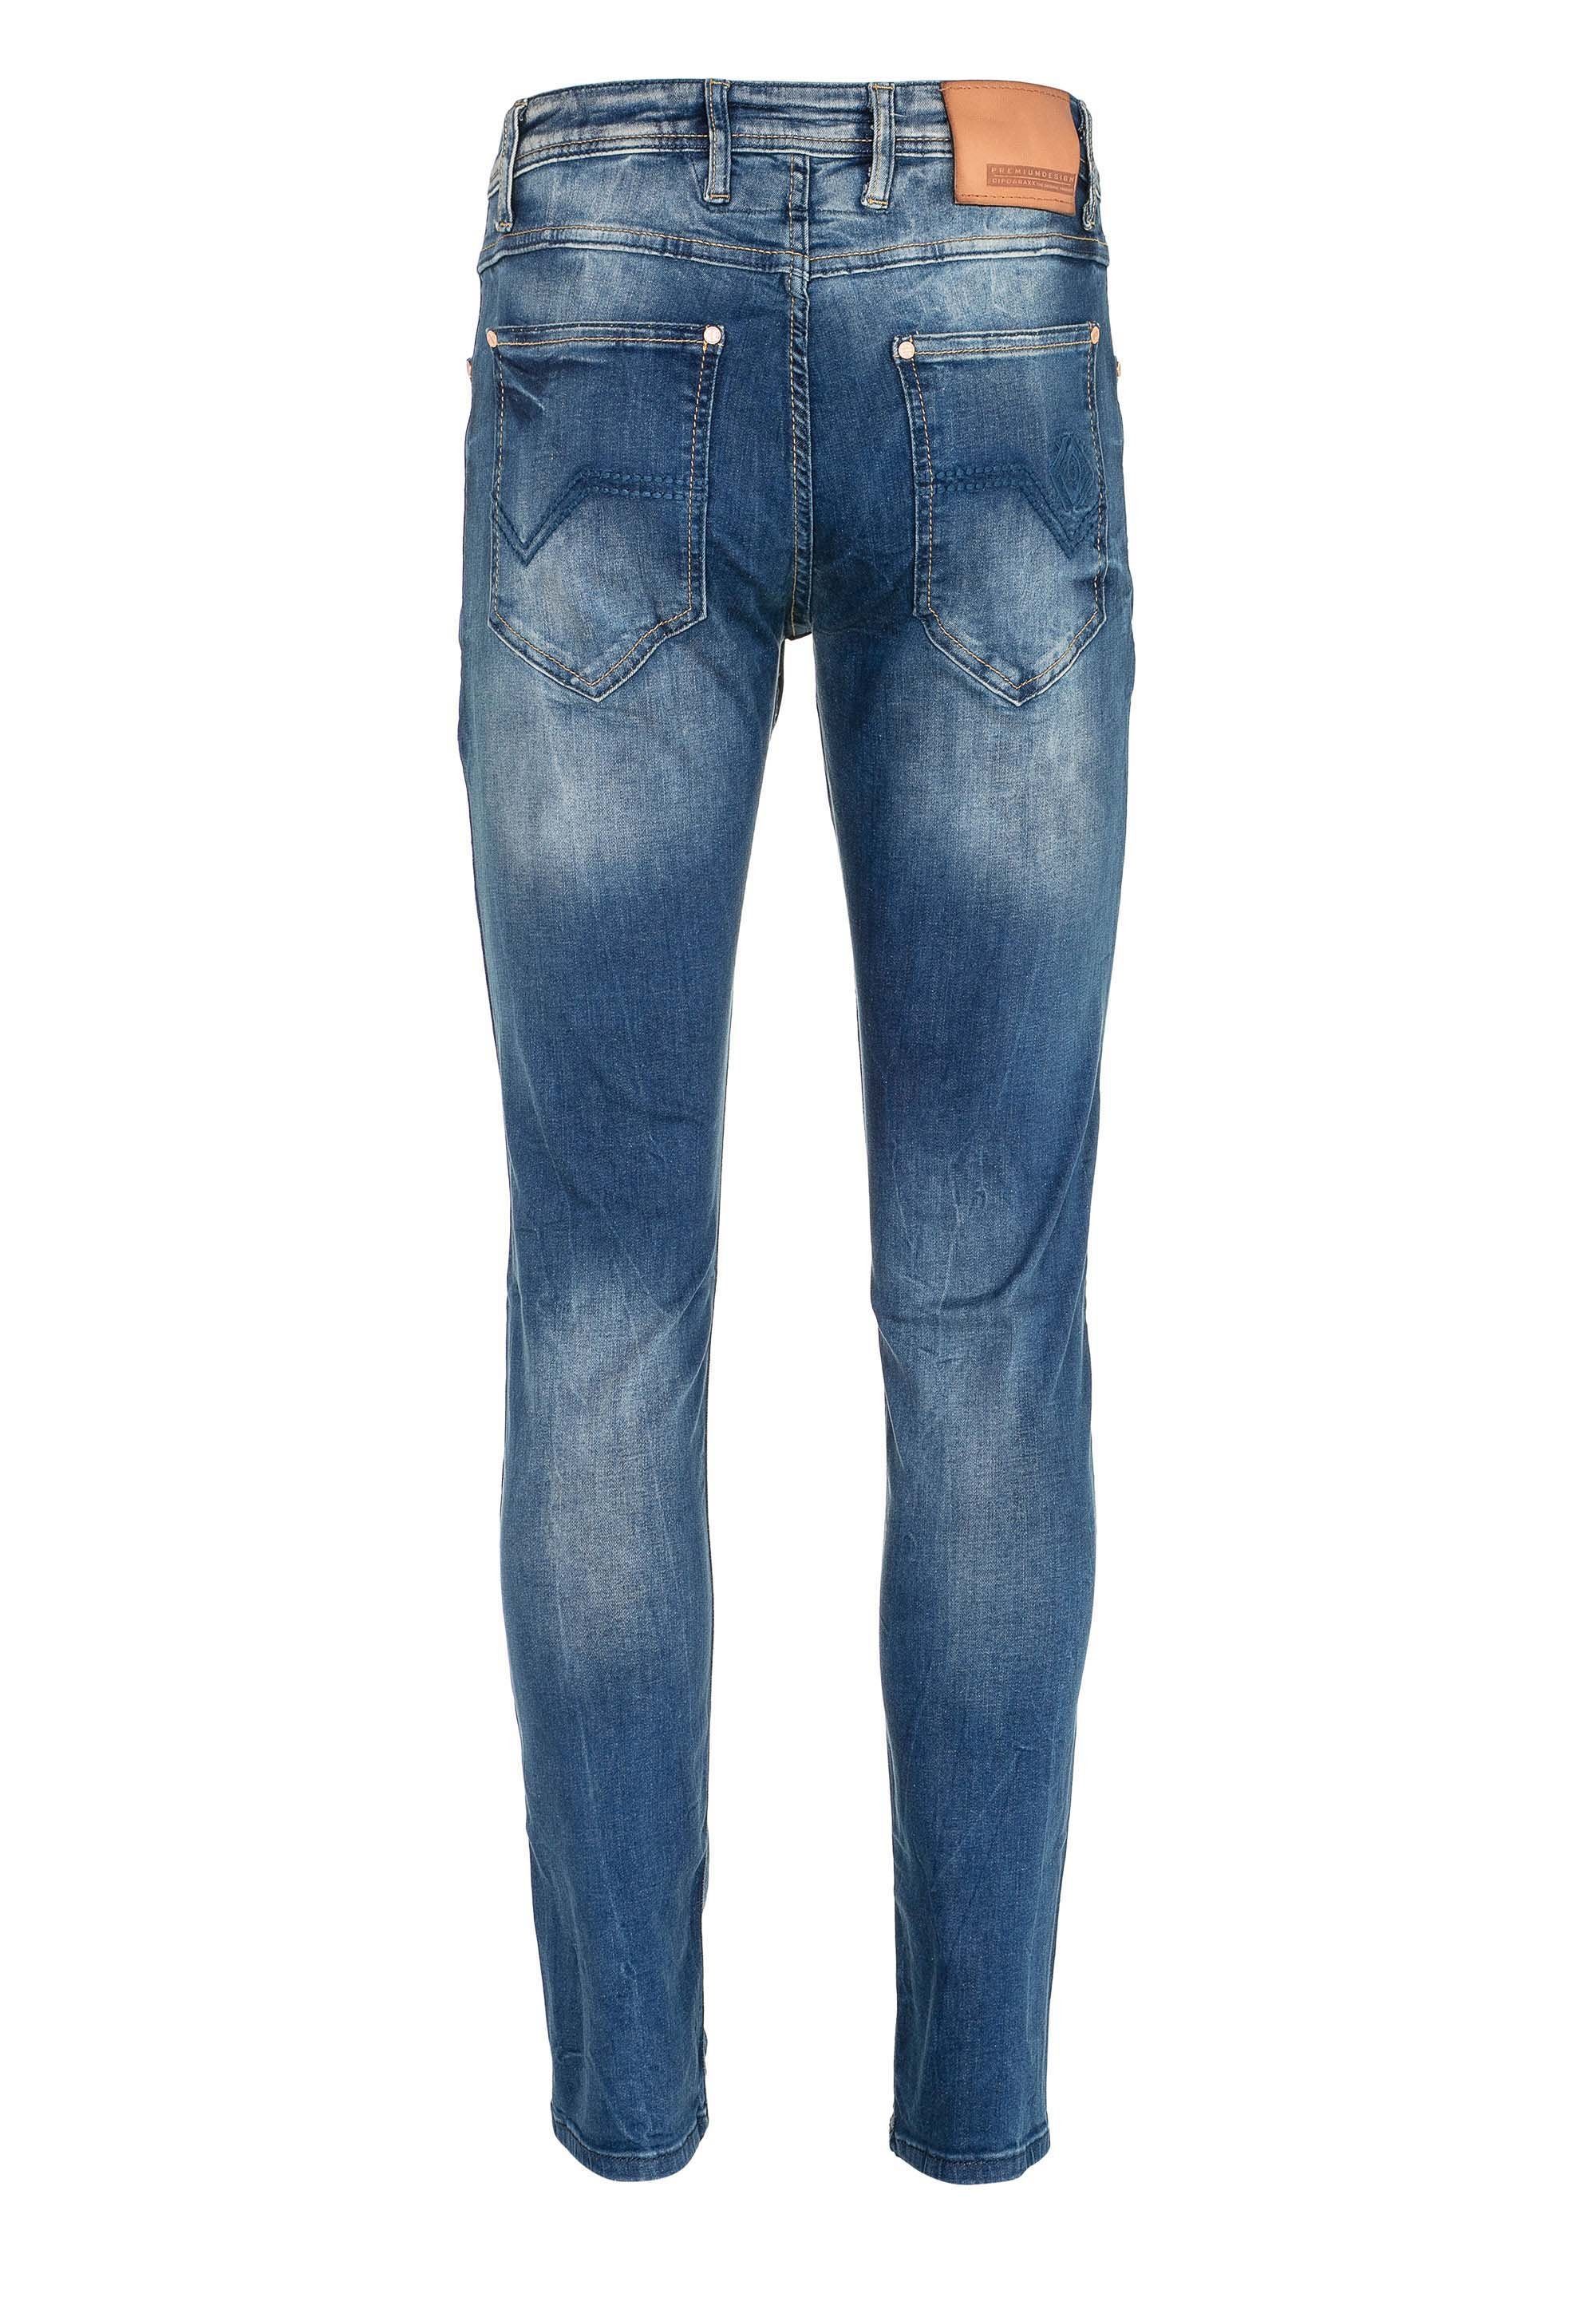 Cipo & Straight Waschung lässiger Fit in Jeans mit Baxx Bequeme